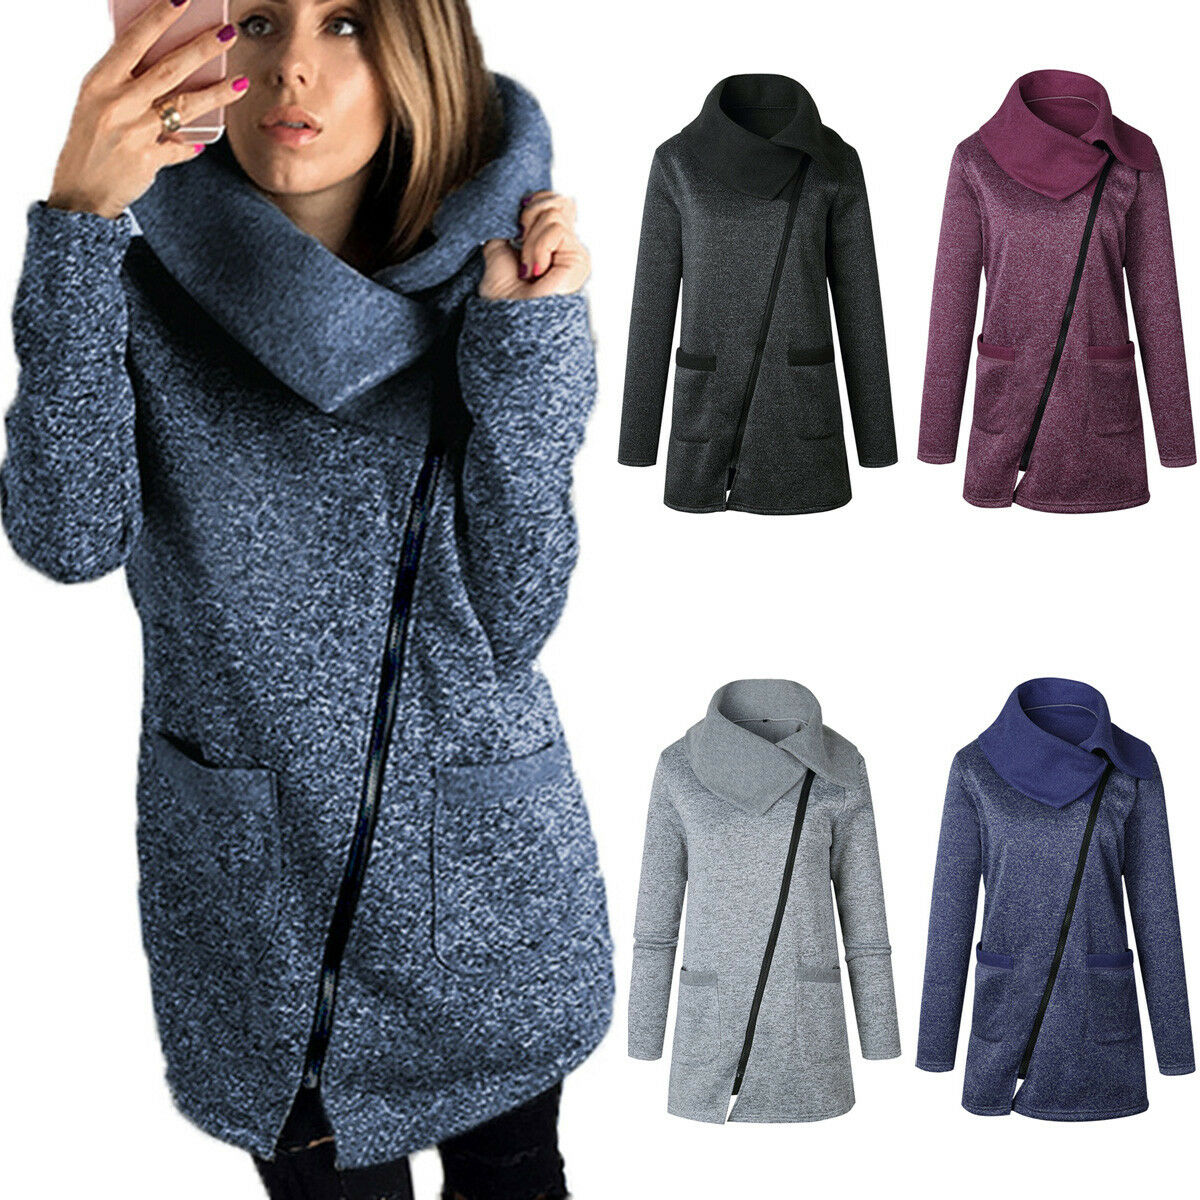 Women Fashion Winter Trench Coat Warm Parka Overcoat Long Jacket Zipper Outwear~